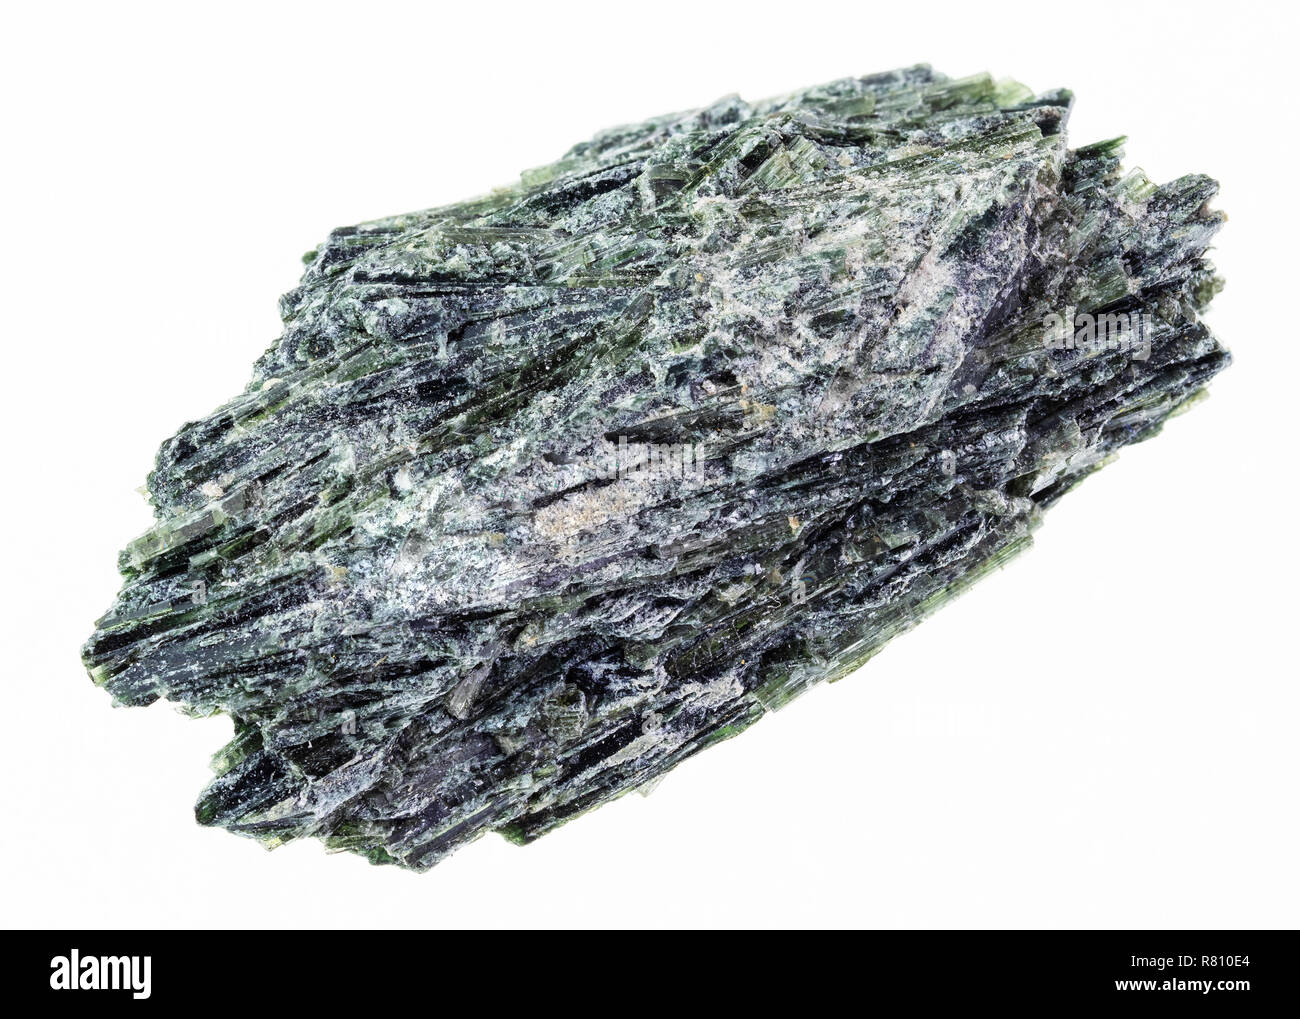 La macro photographie de minéraux naturels à partir de la collection géologique - brut de l'actinolite pierre sur white backgroun Banque D'Images